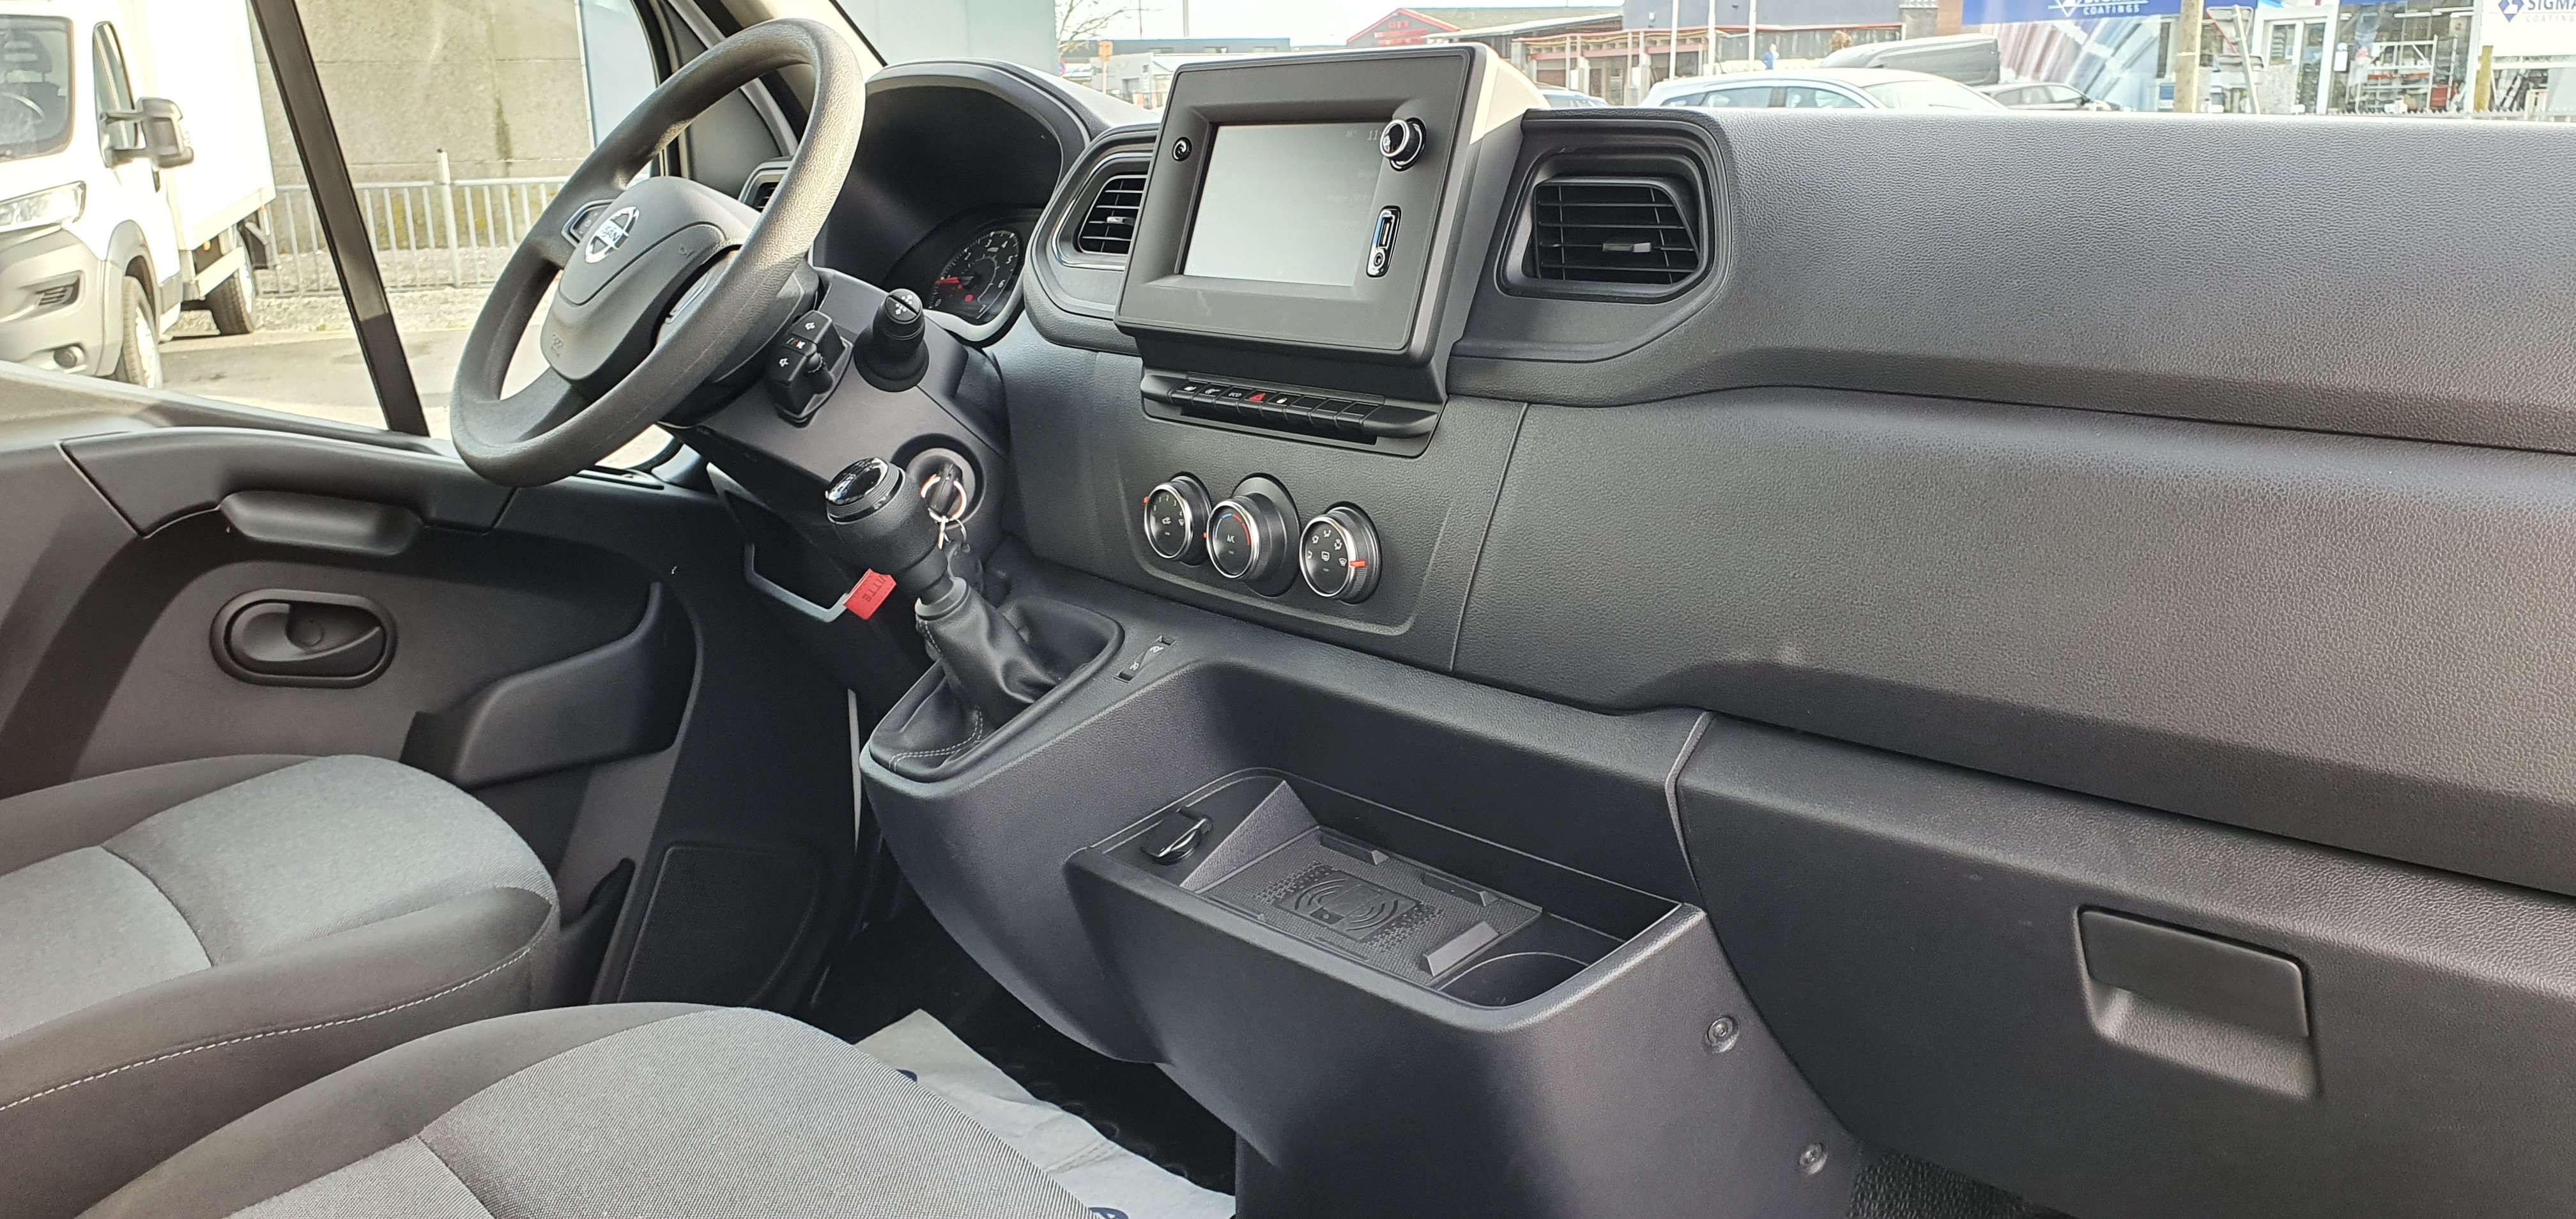 P-Benz - Nissan Onbekend NV400 meubelbak draaideuren 5231km 06/2022 airco